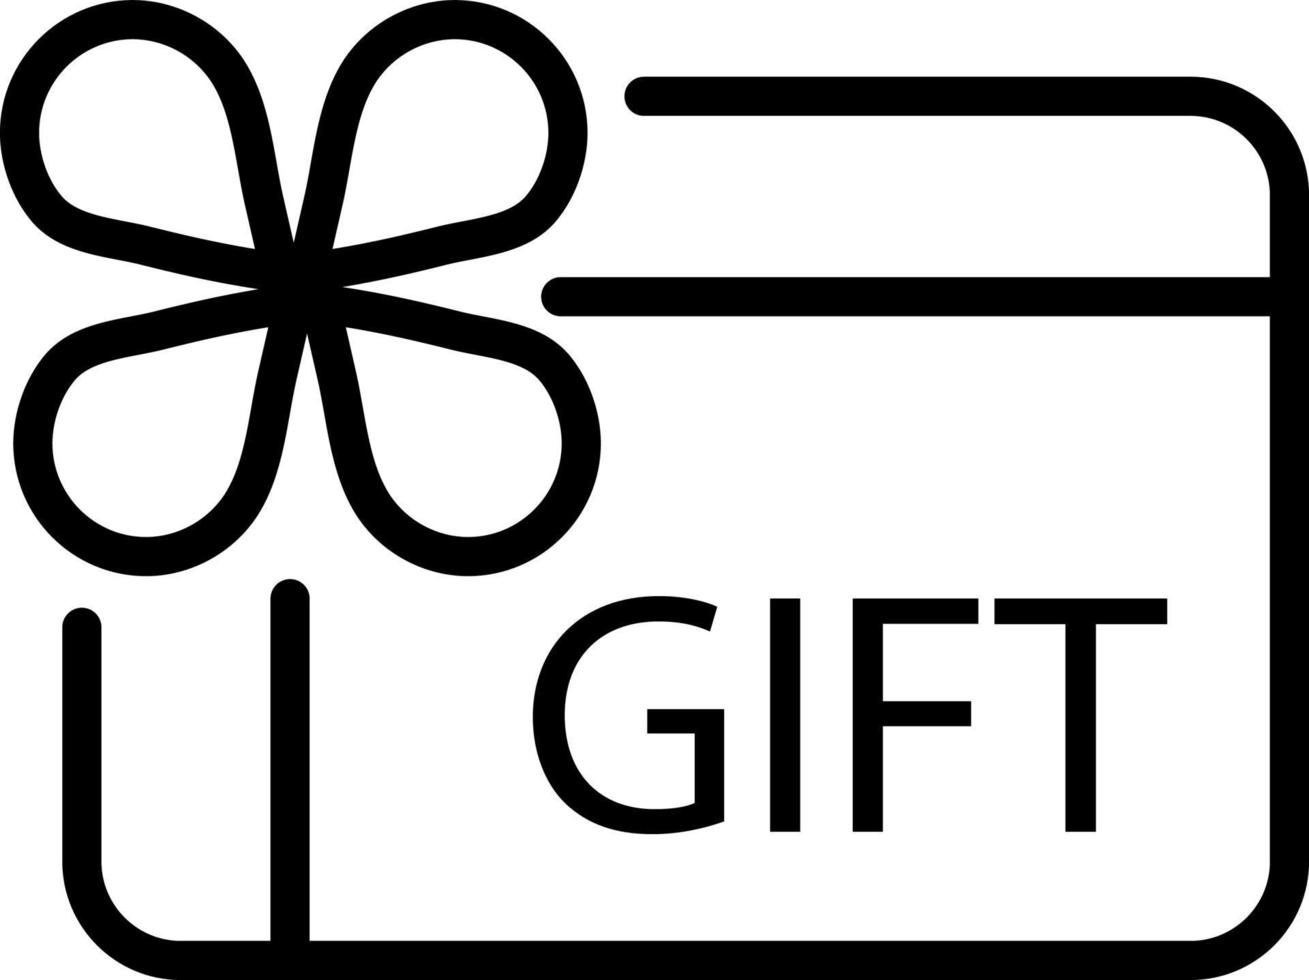 Gutschein-Rabatt-Geschenkkarte-Werbegeschenk-Geschenkverkaufsikone vektor